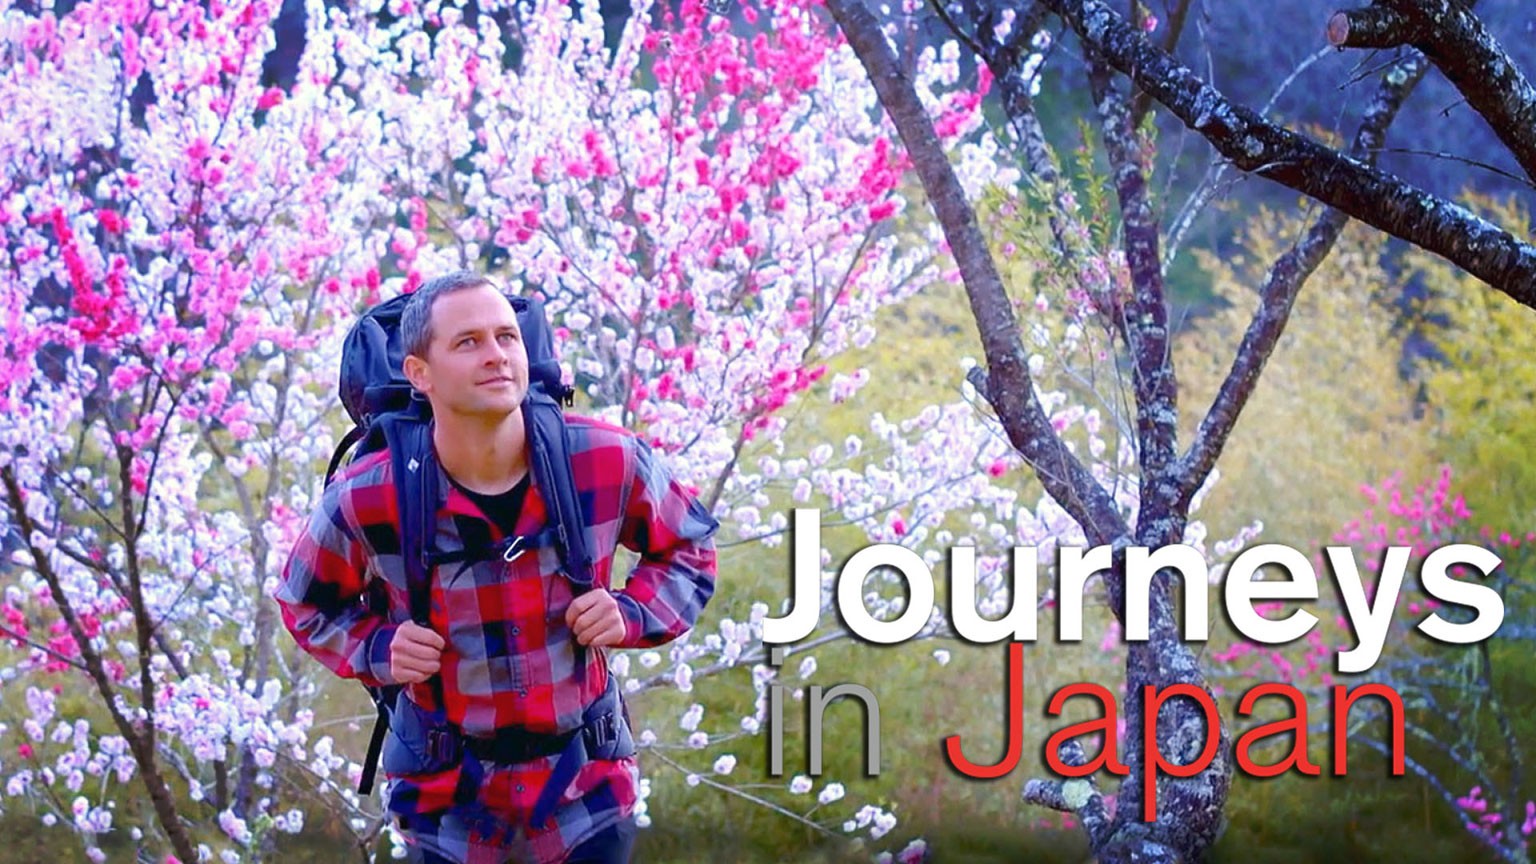 การท่องเที่ยวในญี่ปุ่น
Journeys in Japan